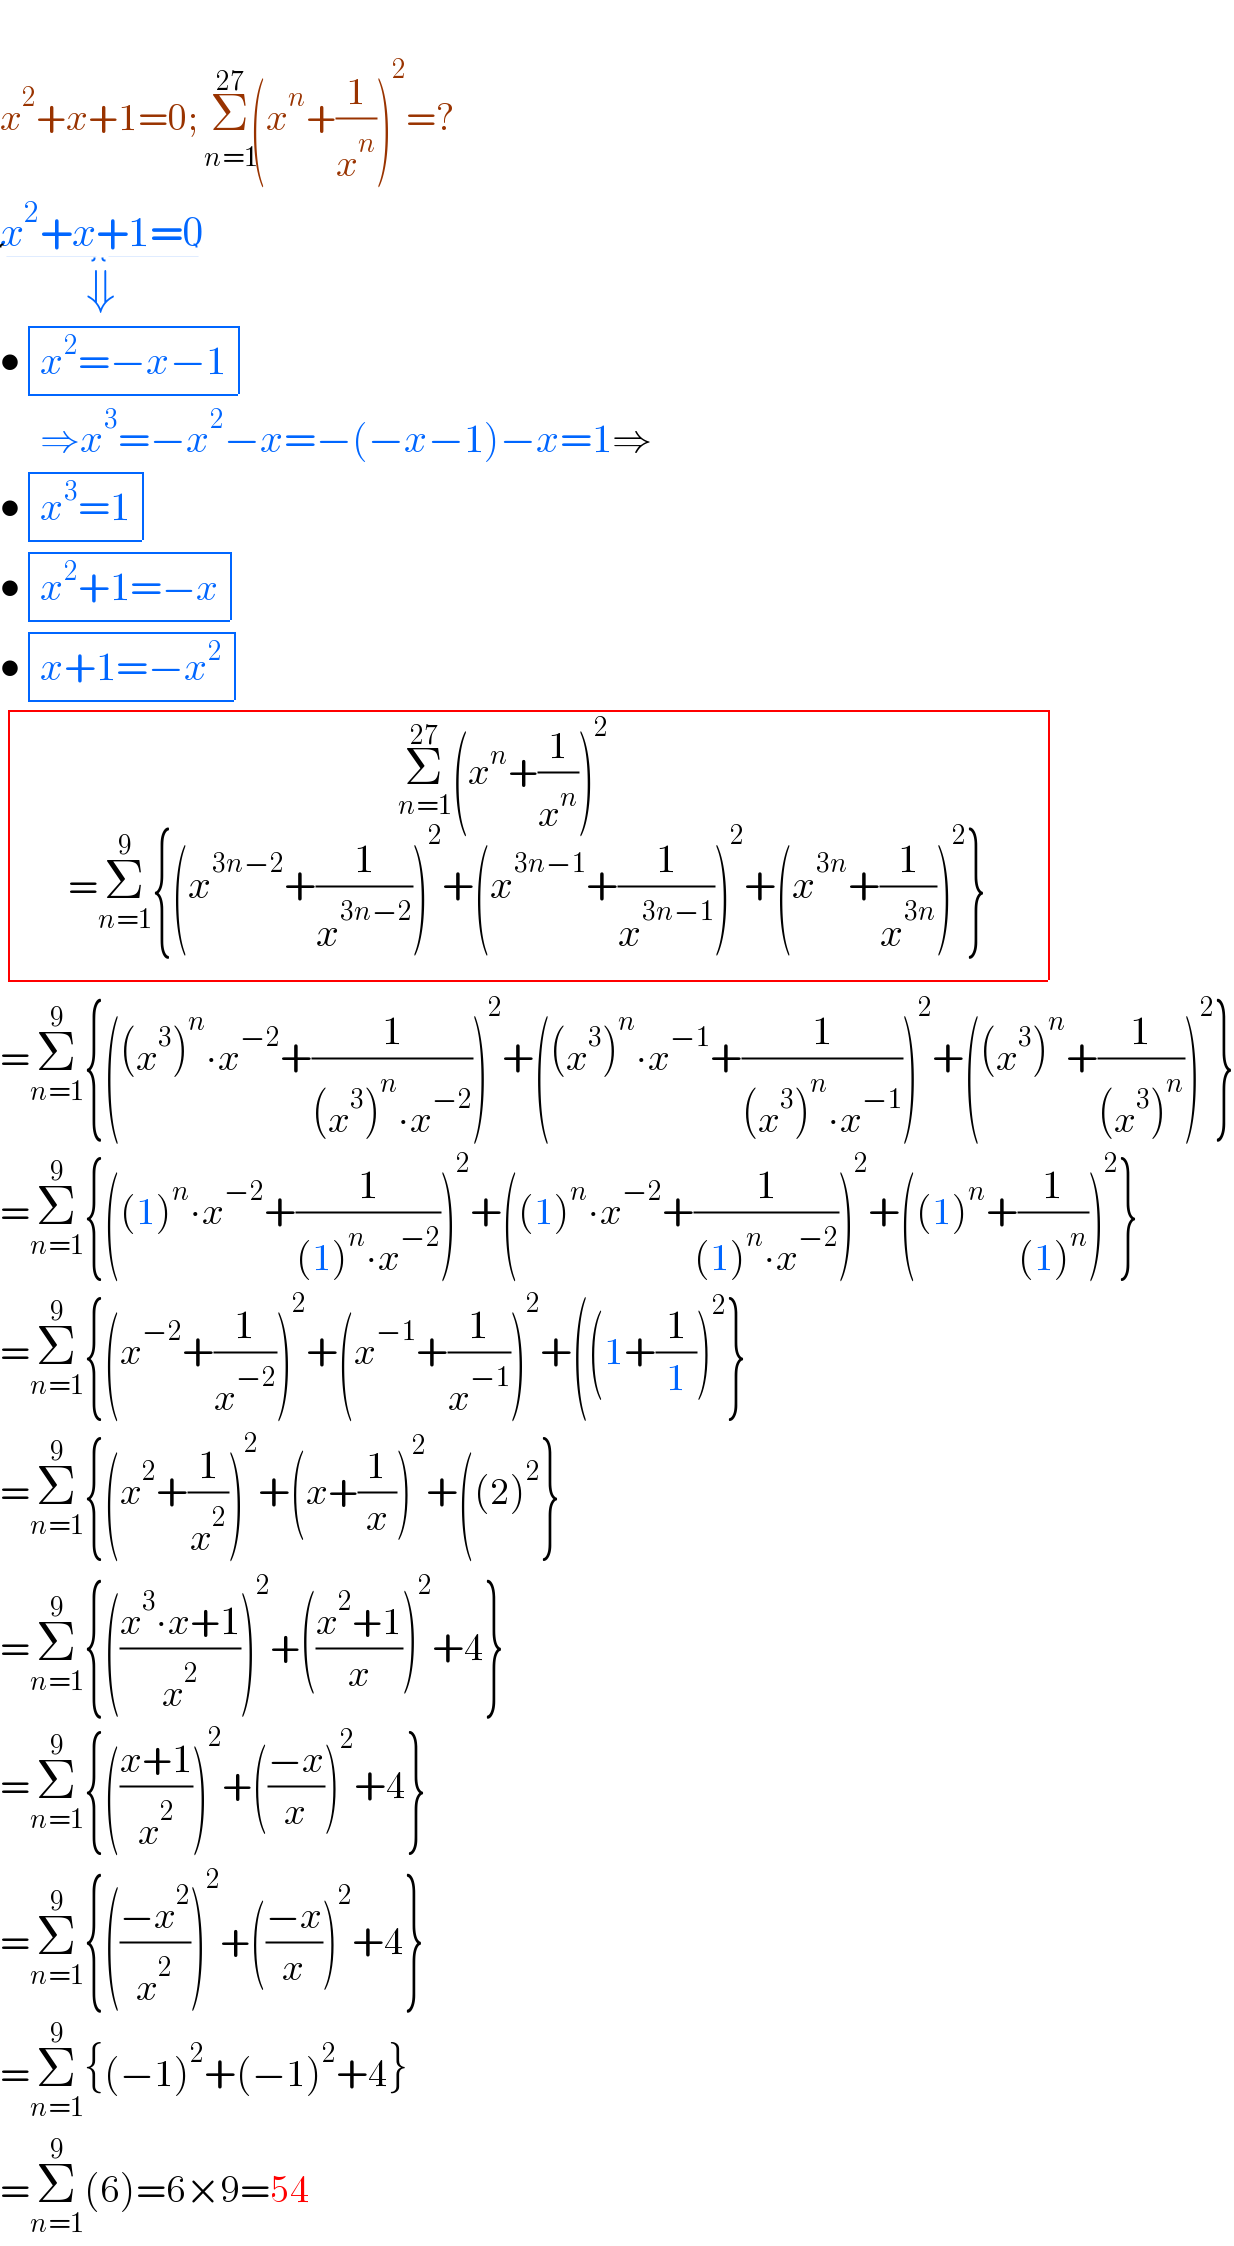   x^2 +x+1=0; Σ_(n=1) ^(27) (x^n +(1/x^n ))^2 =?  x^2 +x+1=0_(⇓)   • determinant (((x^2 =−x−1)))       ⇒x^3 =−x^2 −x=−(−x−1)−x=1⇒  • determinant (((x^3 =1)))    • determinant (((x^2 +1=−x)))  • determinant (((x+1=−x^2 )))    determinant (((Σ_(n=1) ^(27) (x^n +(1/x^n ))^2 _(  ^( _ _ _    )           =Σ_(n=1) ^9 {(x^(3n−2) +(1/x^(3n−2) ))^2 +(x^(3n−1) +(1/x^(3n−1) ))^2 +(x^(3n) +(1/x^(3n) ))^2 })         )))  =Σ_(n=1) ^9 {((x^3 )^n ∙x^(−2) +(1/((x^3 )^n ∙x^(−2) )))^2 +((x^3 )^n ∙x^(−1) +(1/((x^3 )^n ∙x^(−1) )))^2 +((x^3 )^n +(1/((x^3 )^n )))^2 }  =Σ_(n=1) ^9 {((1)^n ∙x^(−2) +(1/((1)^n ∙x^(−2) )))^2 +((1)^n ∙x^(−2) +(1/((1)^n ∙x^(−2) )))^2 +((1)^n +(1/((1)^n )))^2 }  =Σ_(n=1) ^9 {(x^(−2) +(1/x^(−2) ))^2 +(x^(−1) +(1/x^(−1) ))^2 +((1+(1/1))^2 }  =Σ_(n=1) ^9 {(x^2 +(1/x^2 ))^2 +(x+(1/x))^2 +((2)^2 }  =Σ_(n=1) ^9 {(((x^3 ∙x+1)/x^2 ))^2 +(((x^2 +1)/x))^2 +4}  =Σ_(n=1) ^9 {(((x+1)/x^2 ))^2 +(((−x)/x))^2 +4}  =Σ_(n=1) ^9 {(((−x^2 )/x^2 ))^2 +(((−x)/x))^2 +4}  =Σ_(n=1) ^9 {(−1)^2 +(−1)^2 +4}  =Σ_(n=1) ^9 (6)=6×9=54  